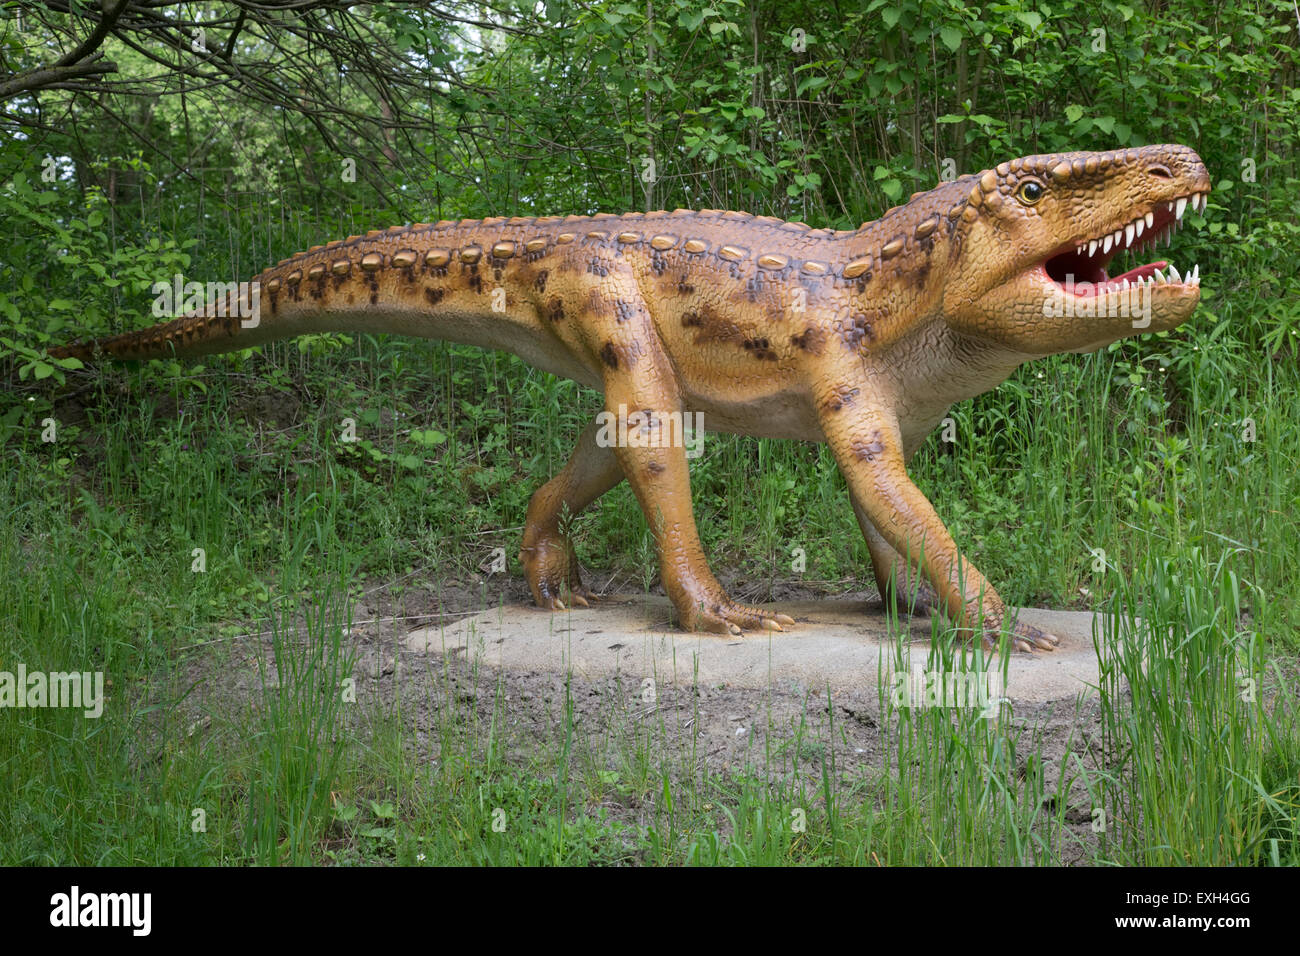 Ornithosuchus extinguidas o pájaro Dinosaurier Archsaur cocodrilo Parque Triásico Alemania Foto de stock